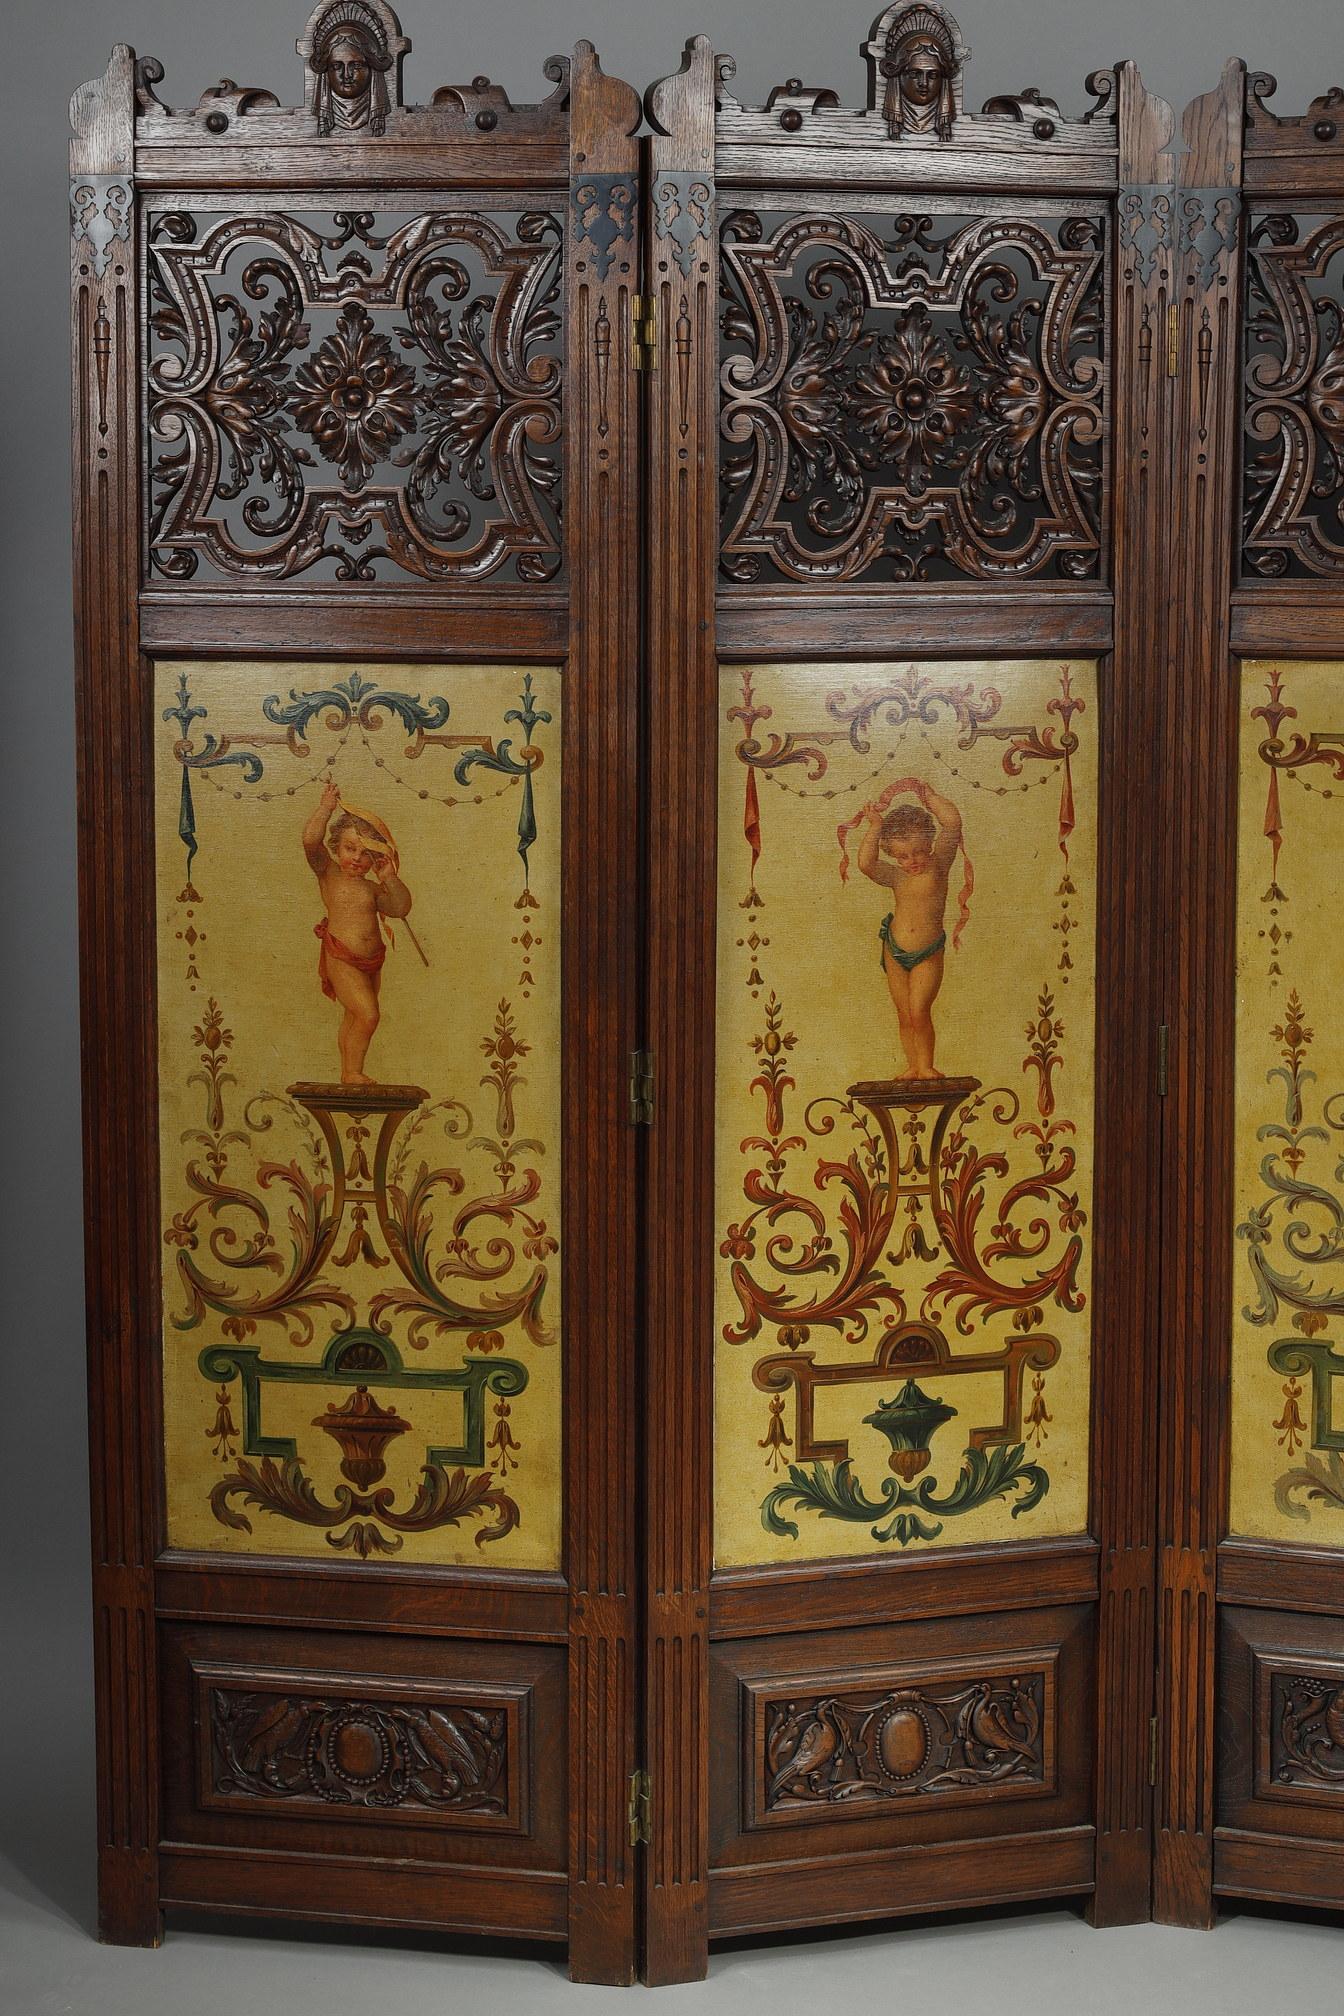 Vierblättriger Paravent aus geschnitztem Holz und bemalt im Bérain-Stil. Jede Tafel zeigt oben einen Frauenkopf mit Schleier, umgeben von einem Muschelmotiv. Der obere Teil aus durchbrochenem Holz ist fein geschnitzt und graviert mit Arabesken und